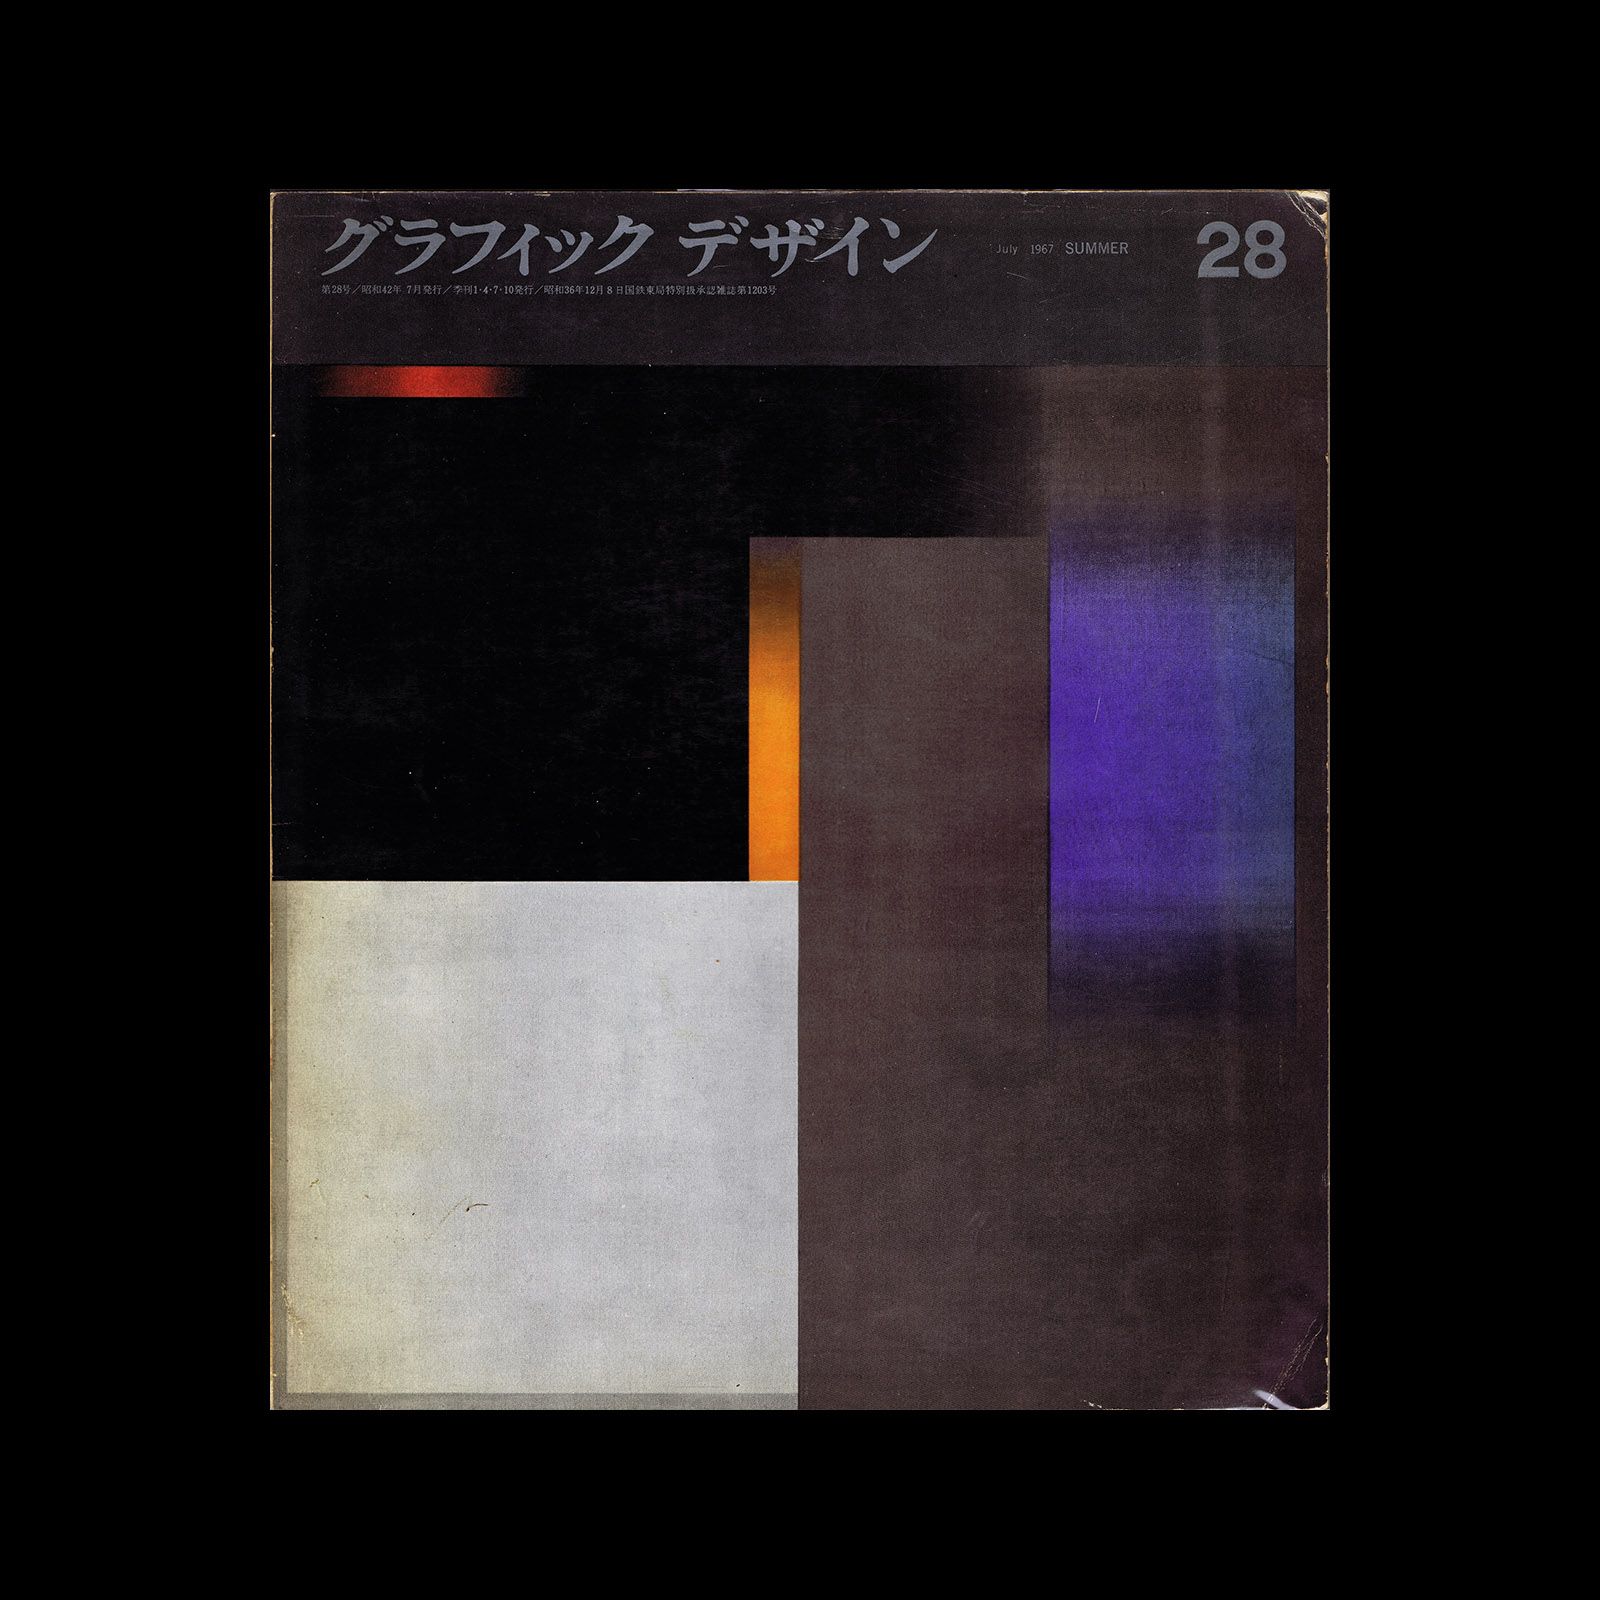 Graphic Design 28, 1967. Cover design by Yuichi Nishiwaki